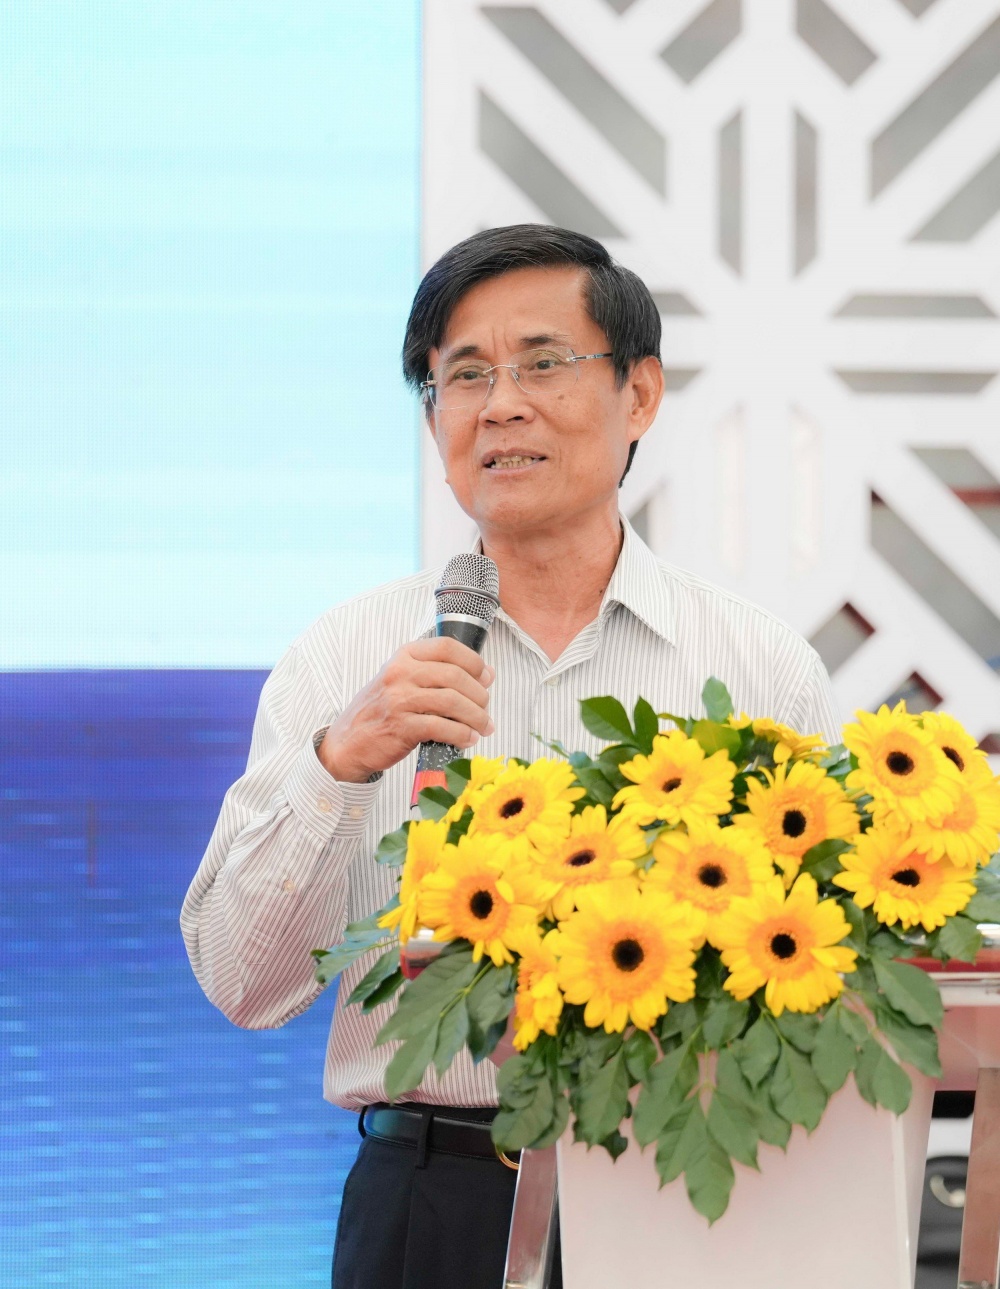 Ông Lê Minh Hồng, nguyên Phó Tổng giám đốc PVN, nguyên Chủ tịch HĐQT PV GAS phát biểu chúc mừng PV GAS bước sang tuổi mới thành công và phát triển